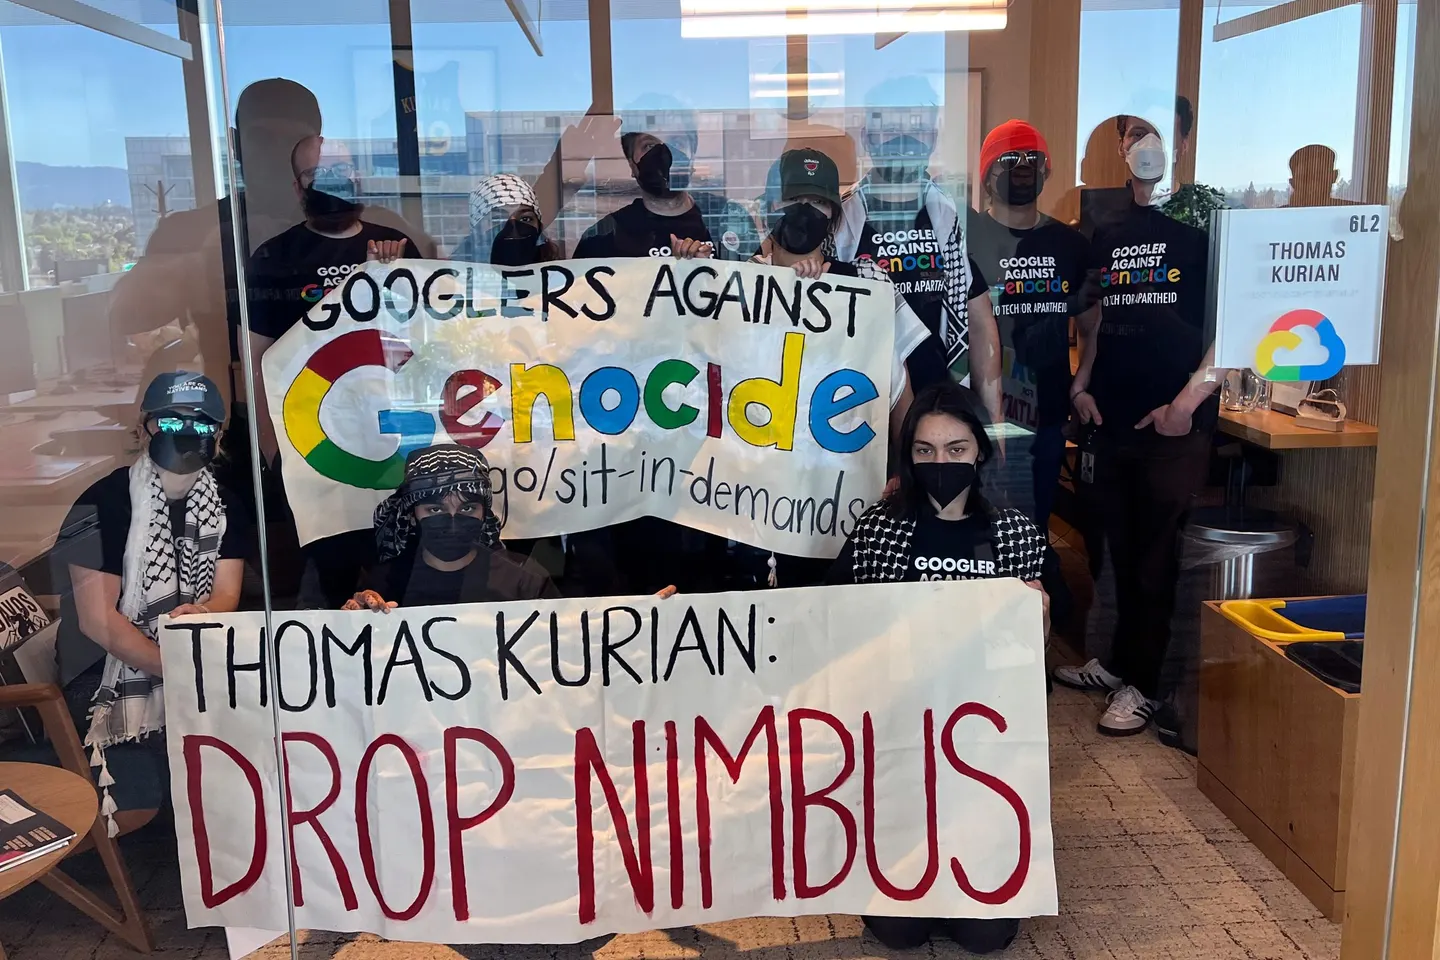 El 16 de abril, los empleados de Google organizaron una sentada en la oficina de Sunnyvale, California, del presidente de Google Cloud, Thomas Kurian, por el Proyecto Nimbus, el contrato de nube de mil millones de dólares de la compañía con el gobierno israelí. CAMPAÑA NO A LA TECNOLOGÍA PARA EL APARTHEID